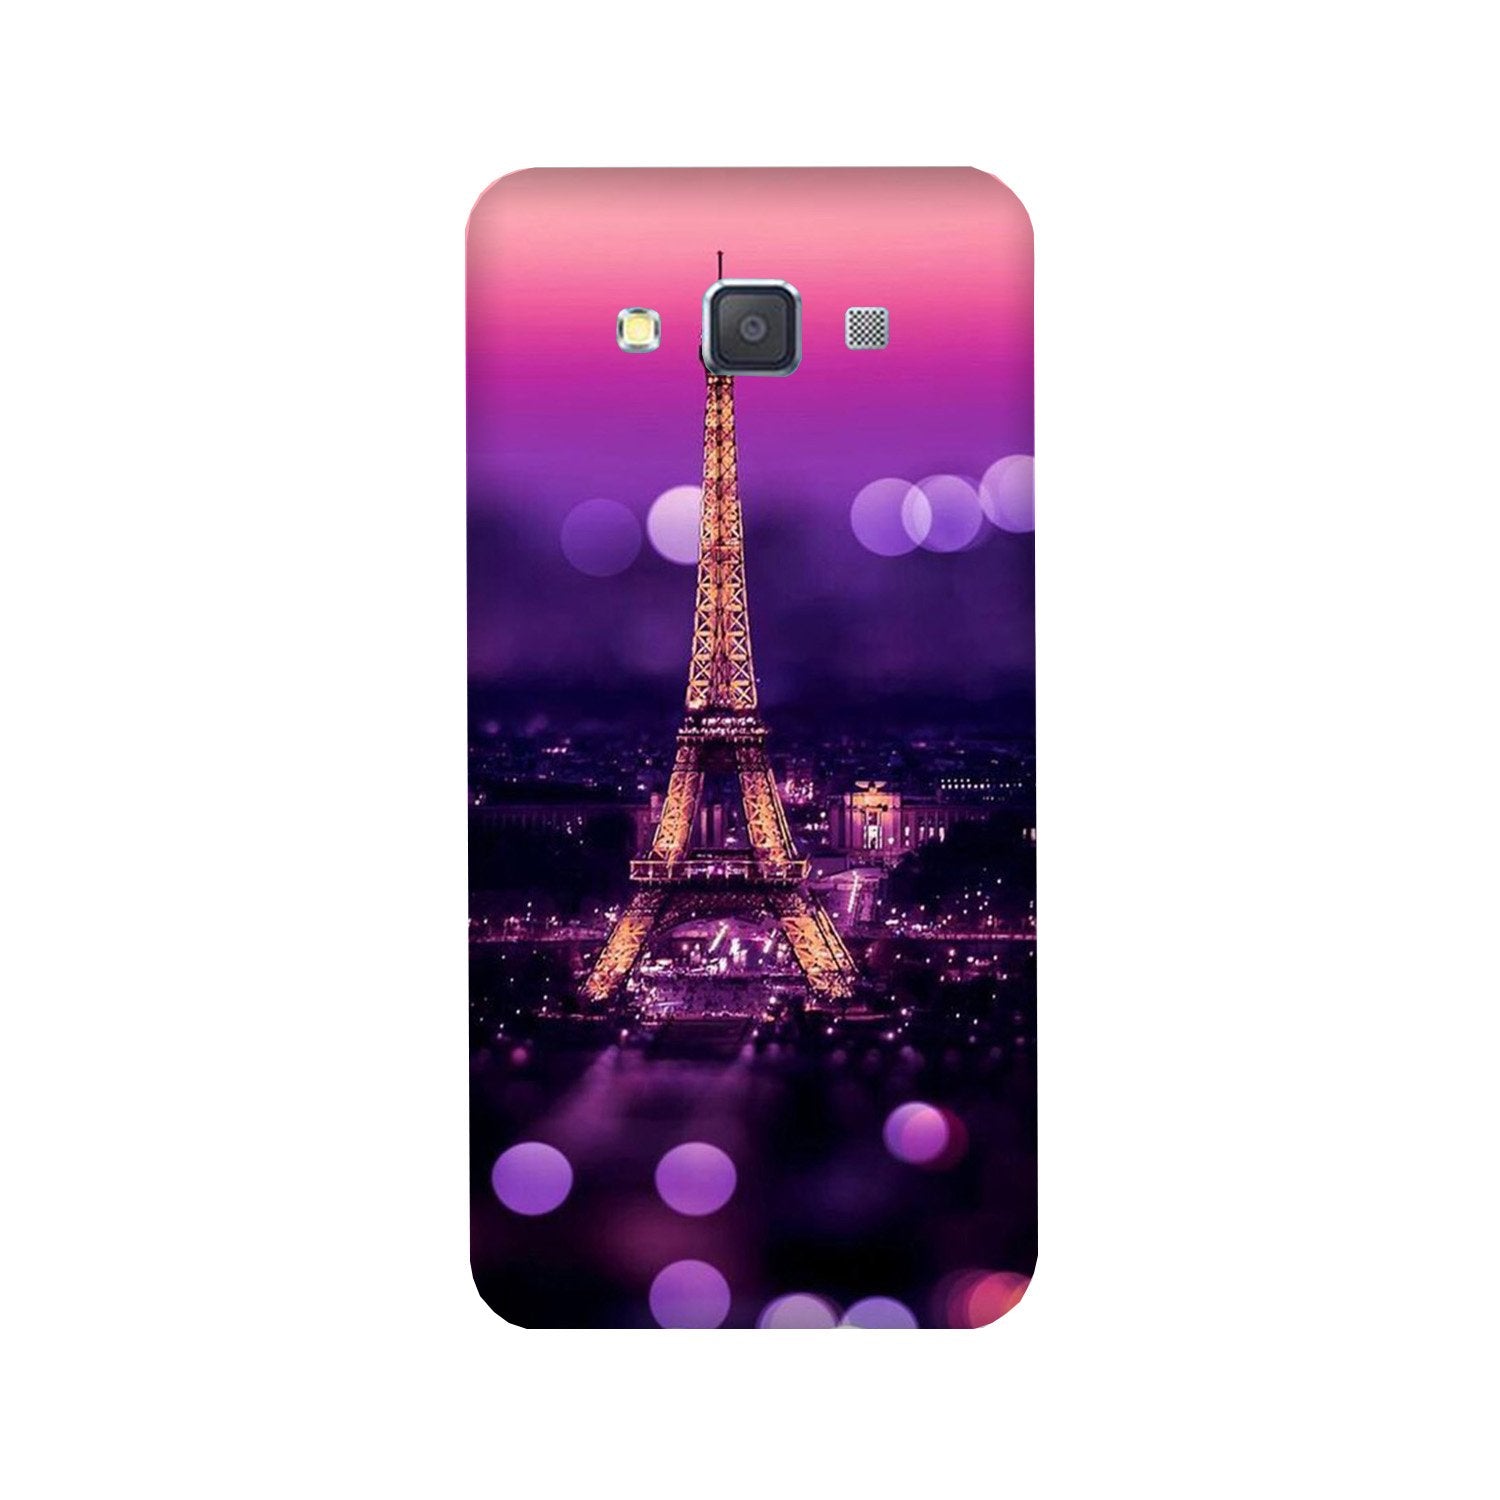 Eiffel Tower Case for Galaxy A8 (2015)